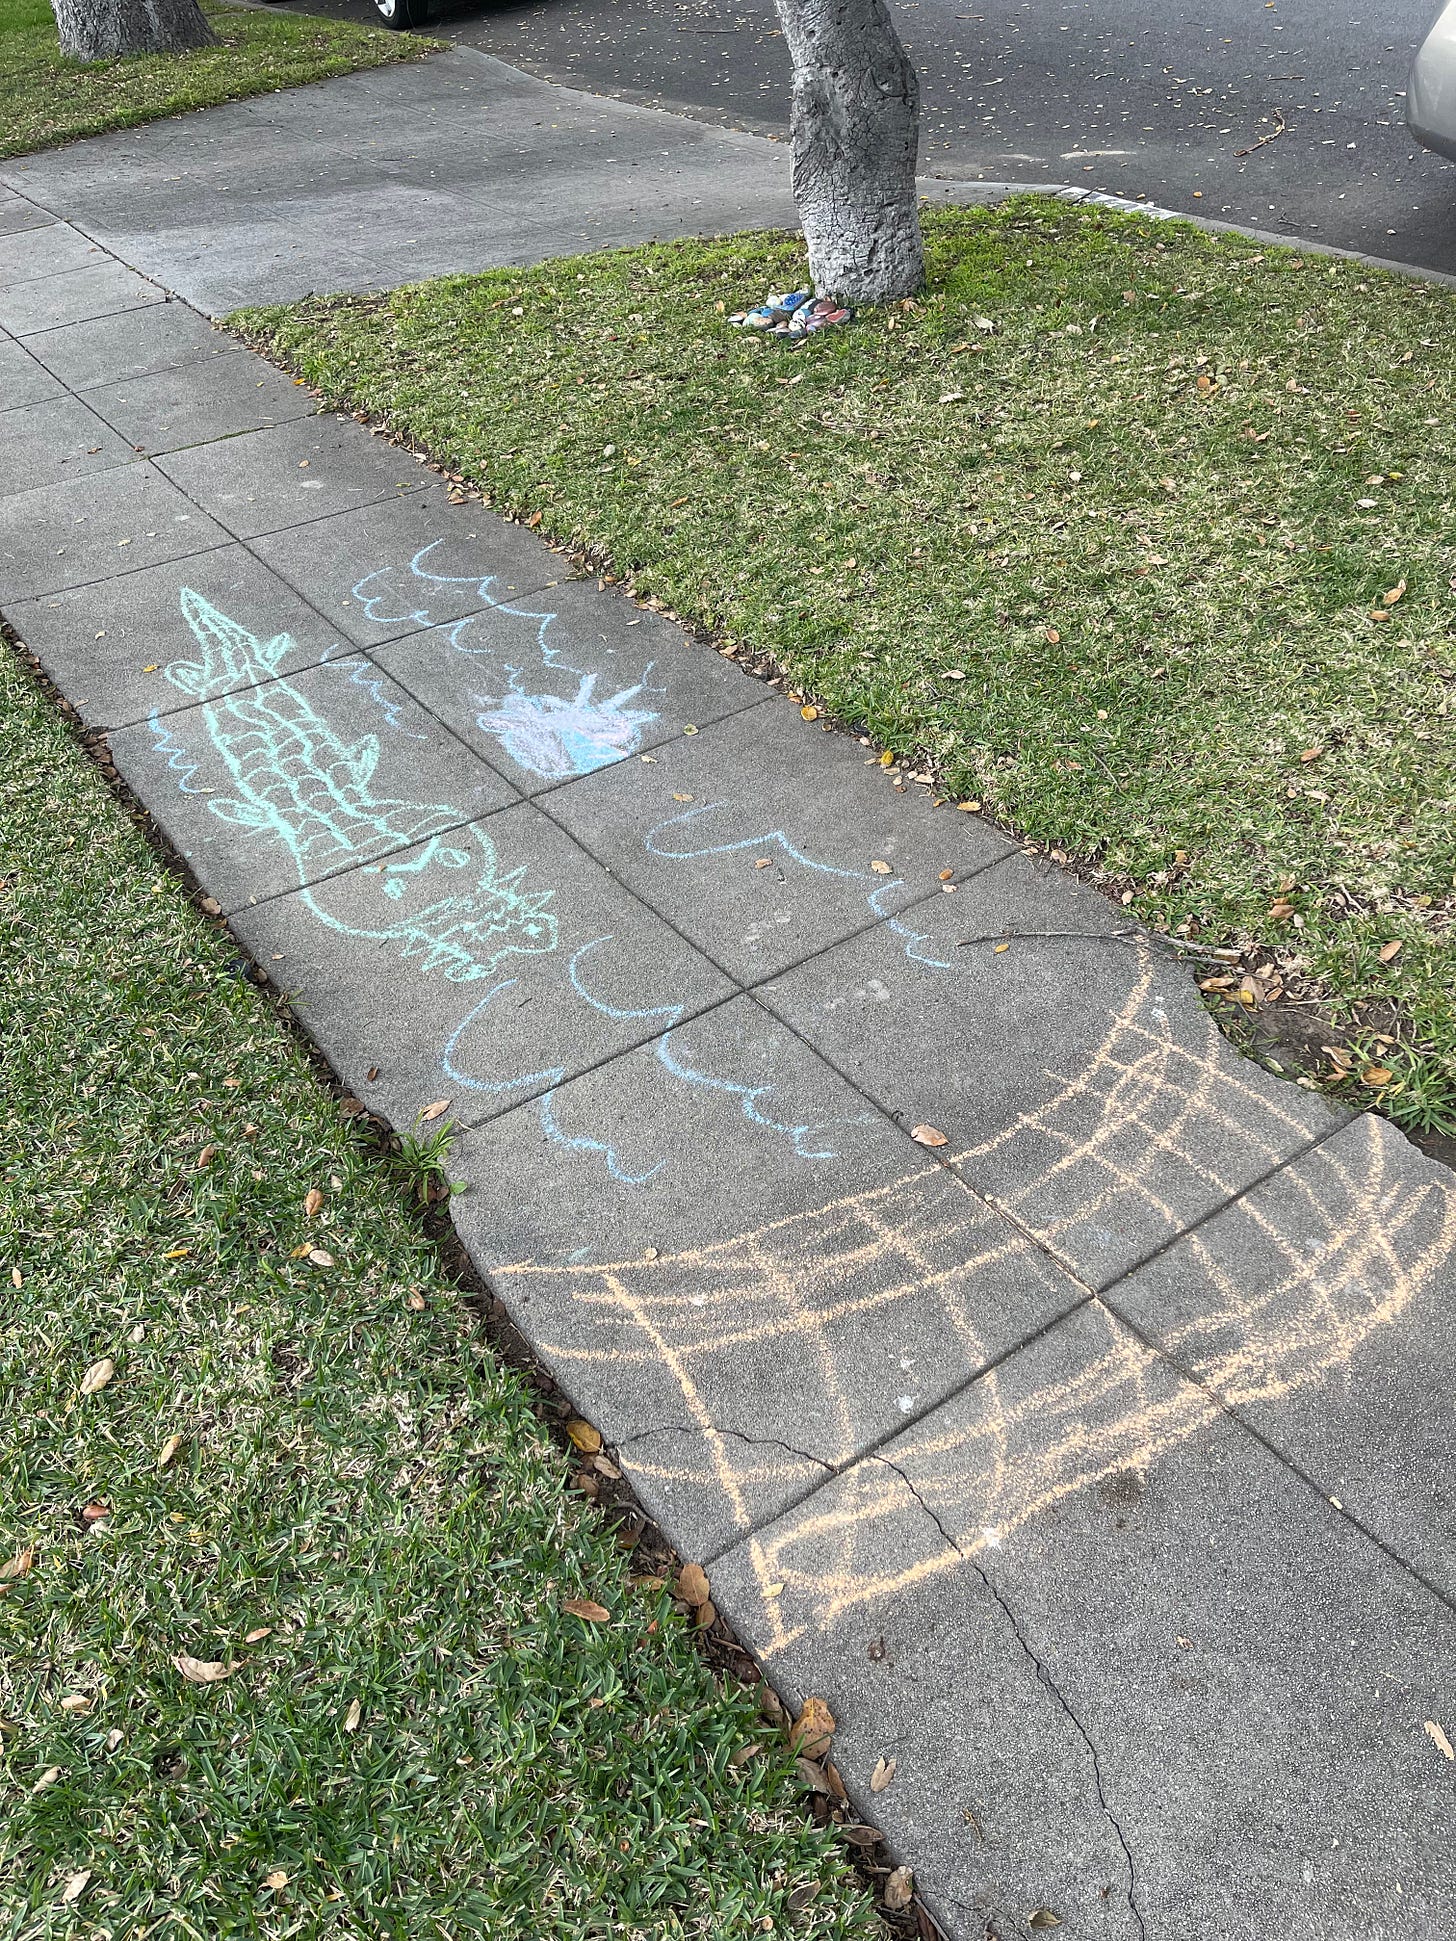 Sidewalk chalk portraying a bridge, river, and alligator